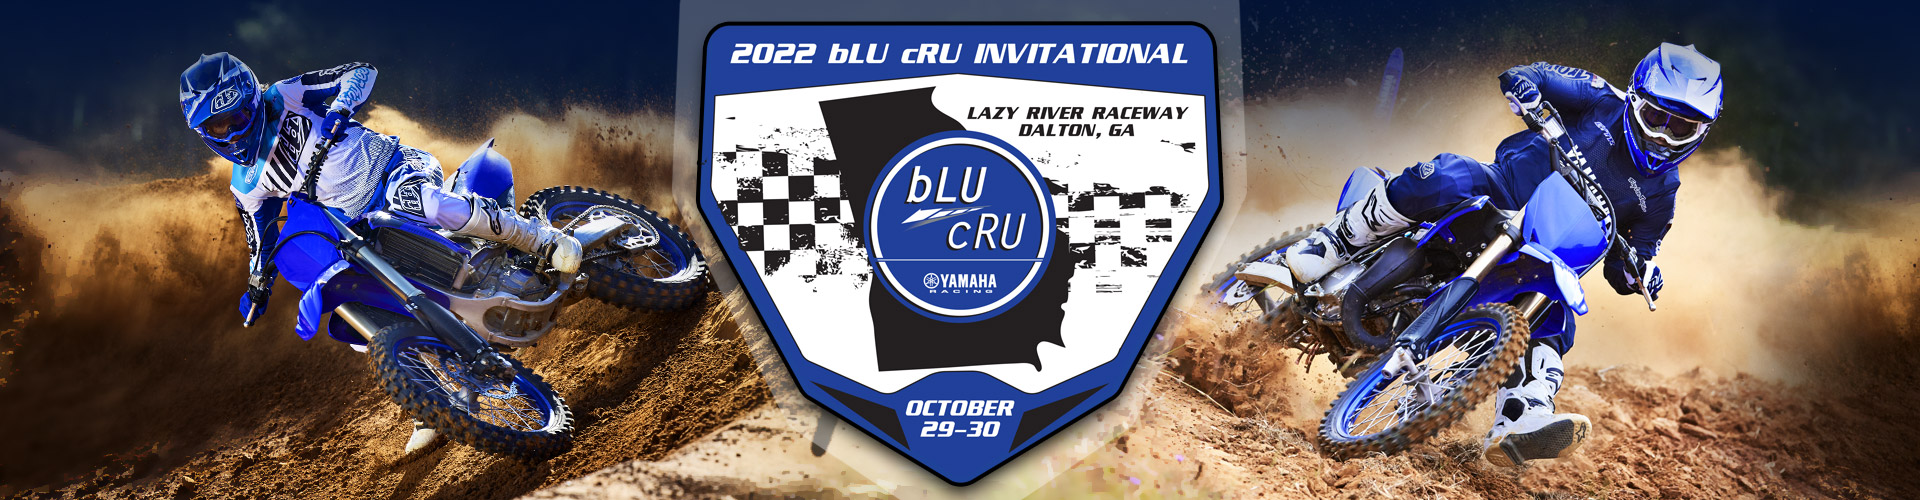 bLU cRU Invitational - South